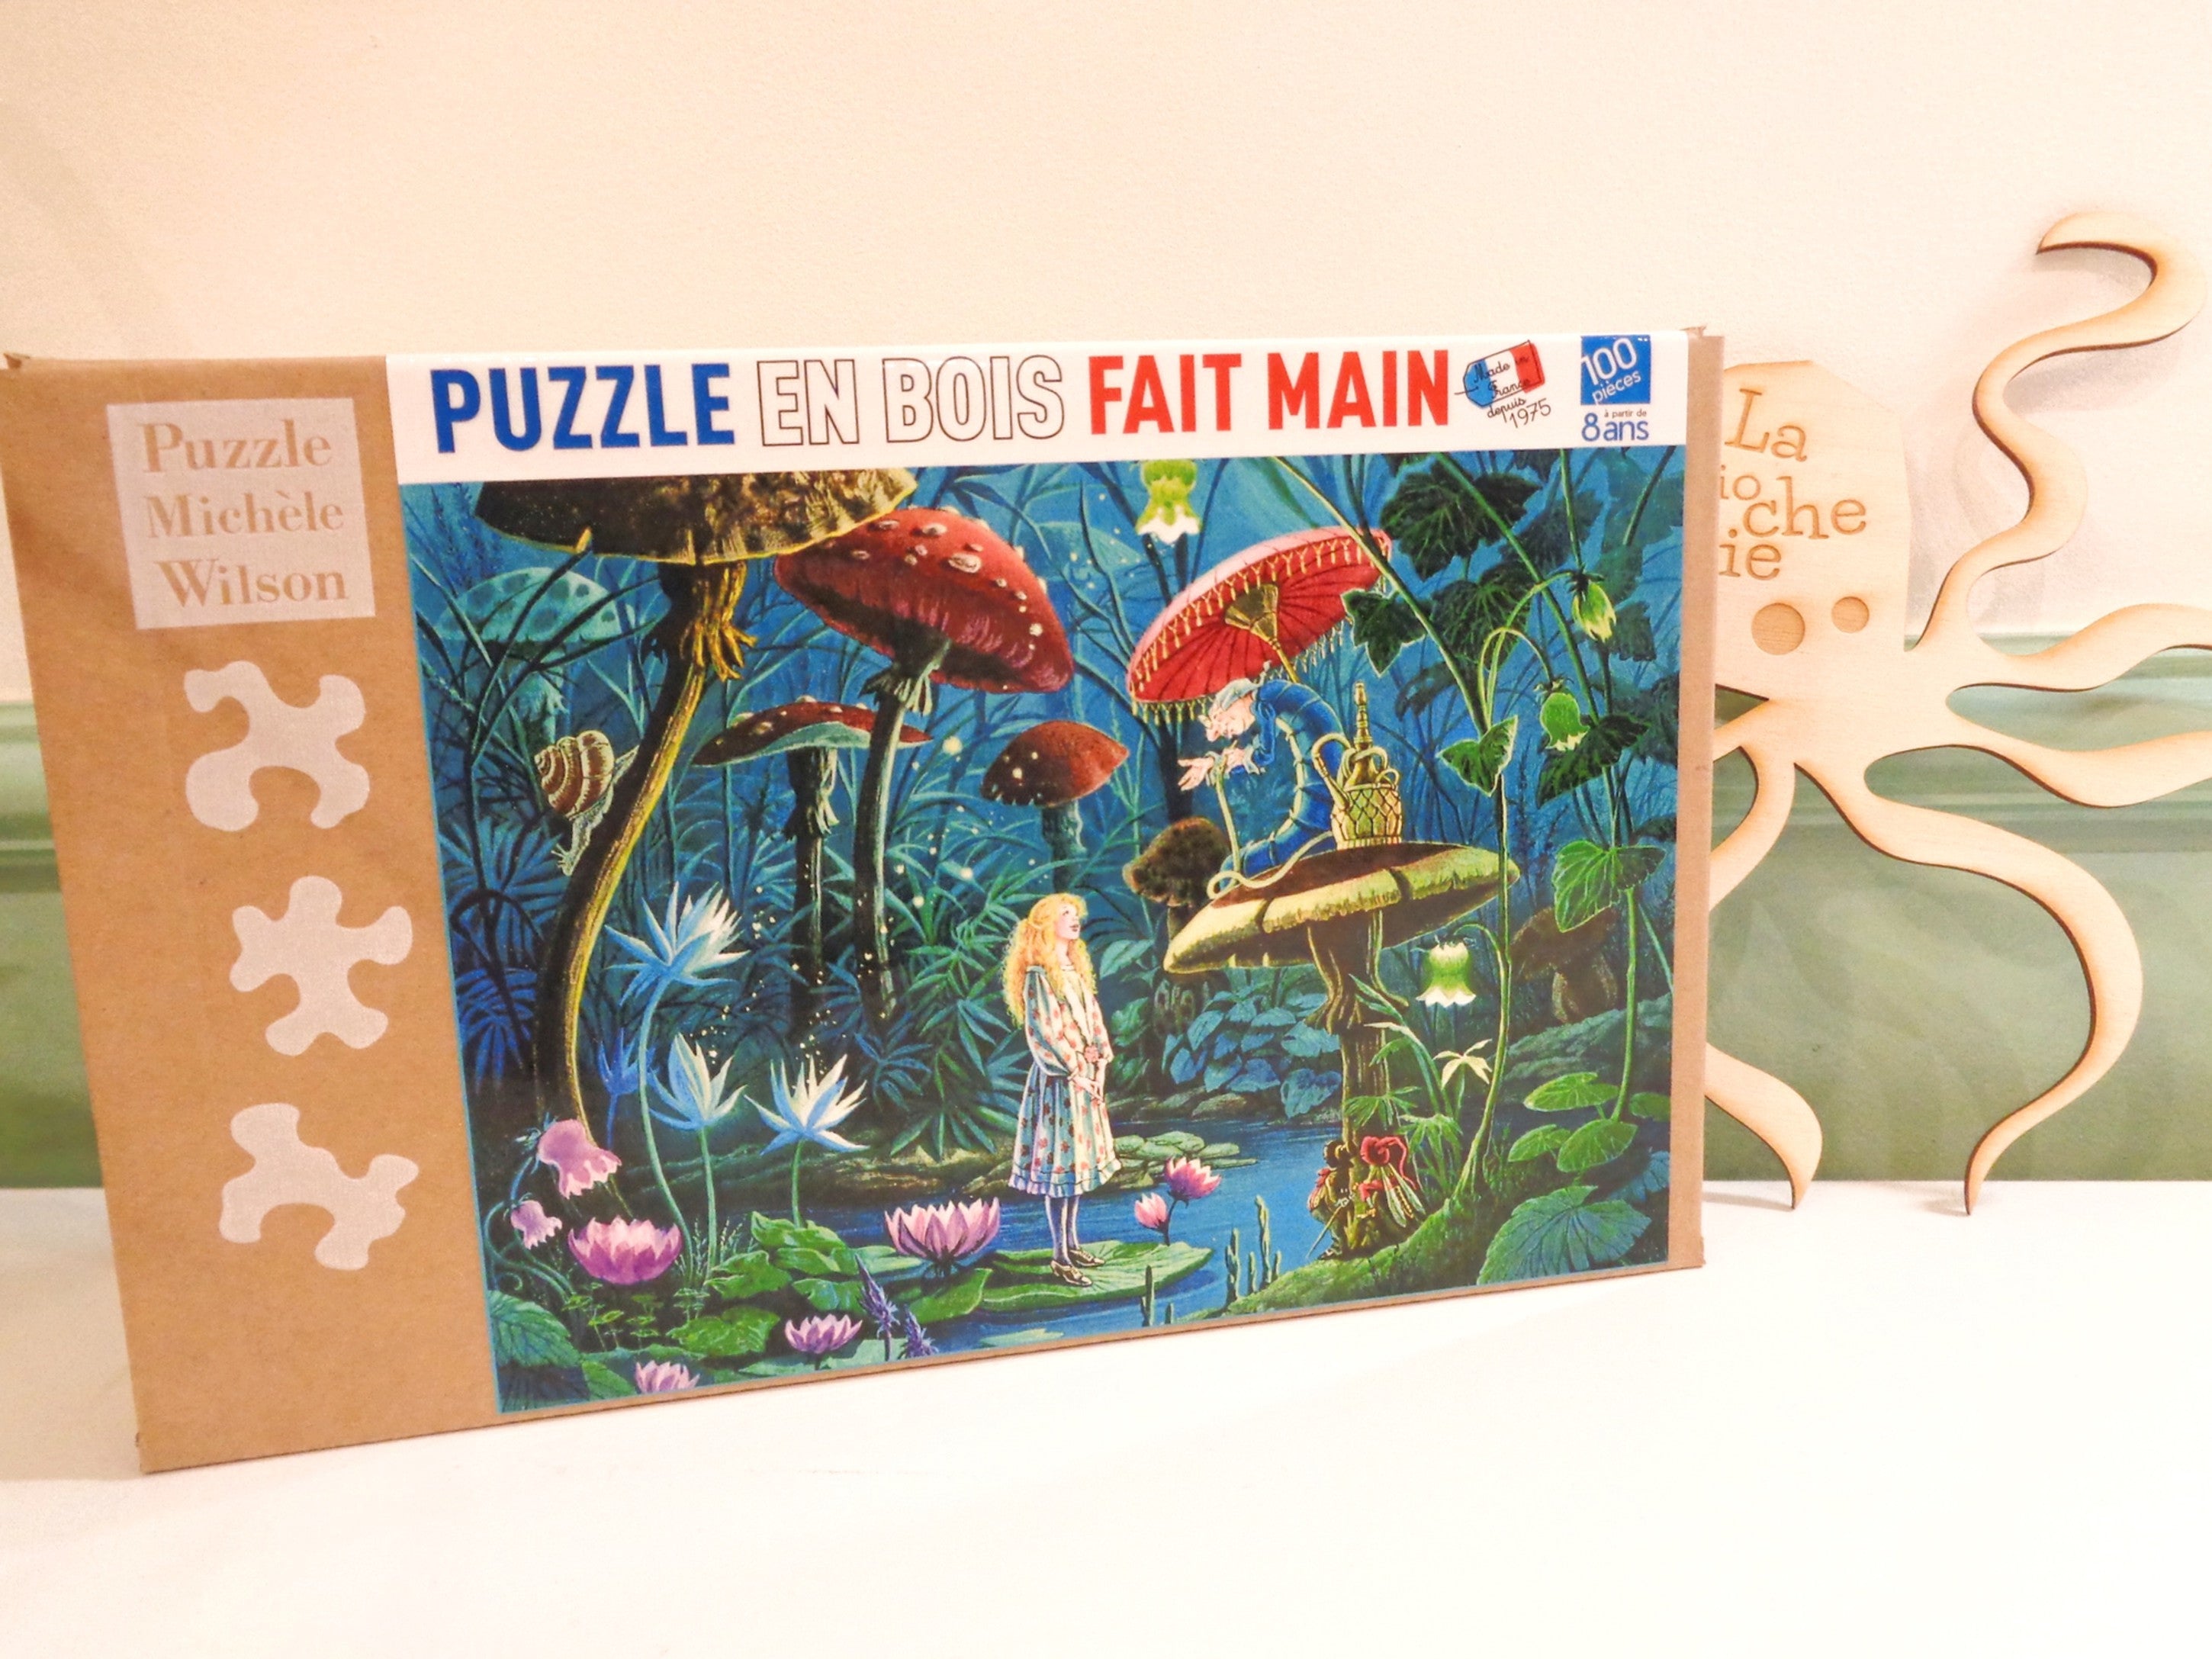 Puzzle bois 100 pièces Alice aux pays des merveilles - Made in France - Michèle Wilson